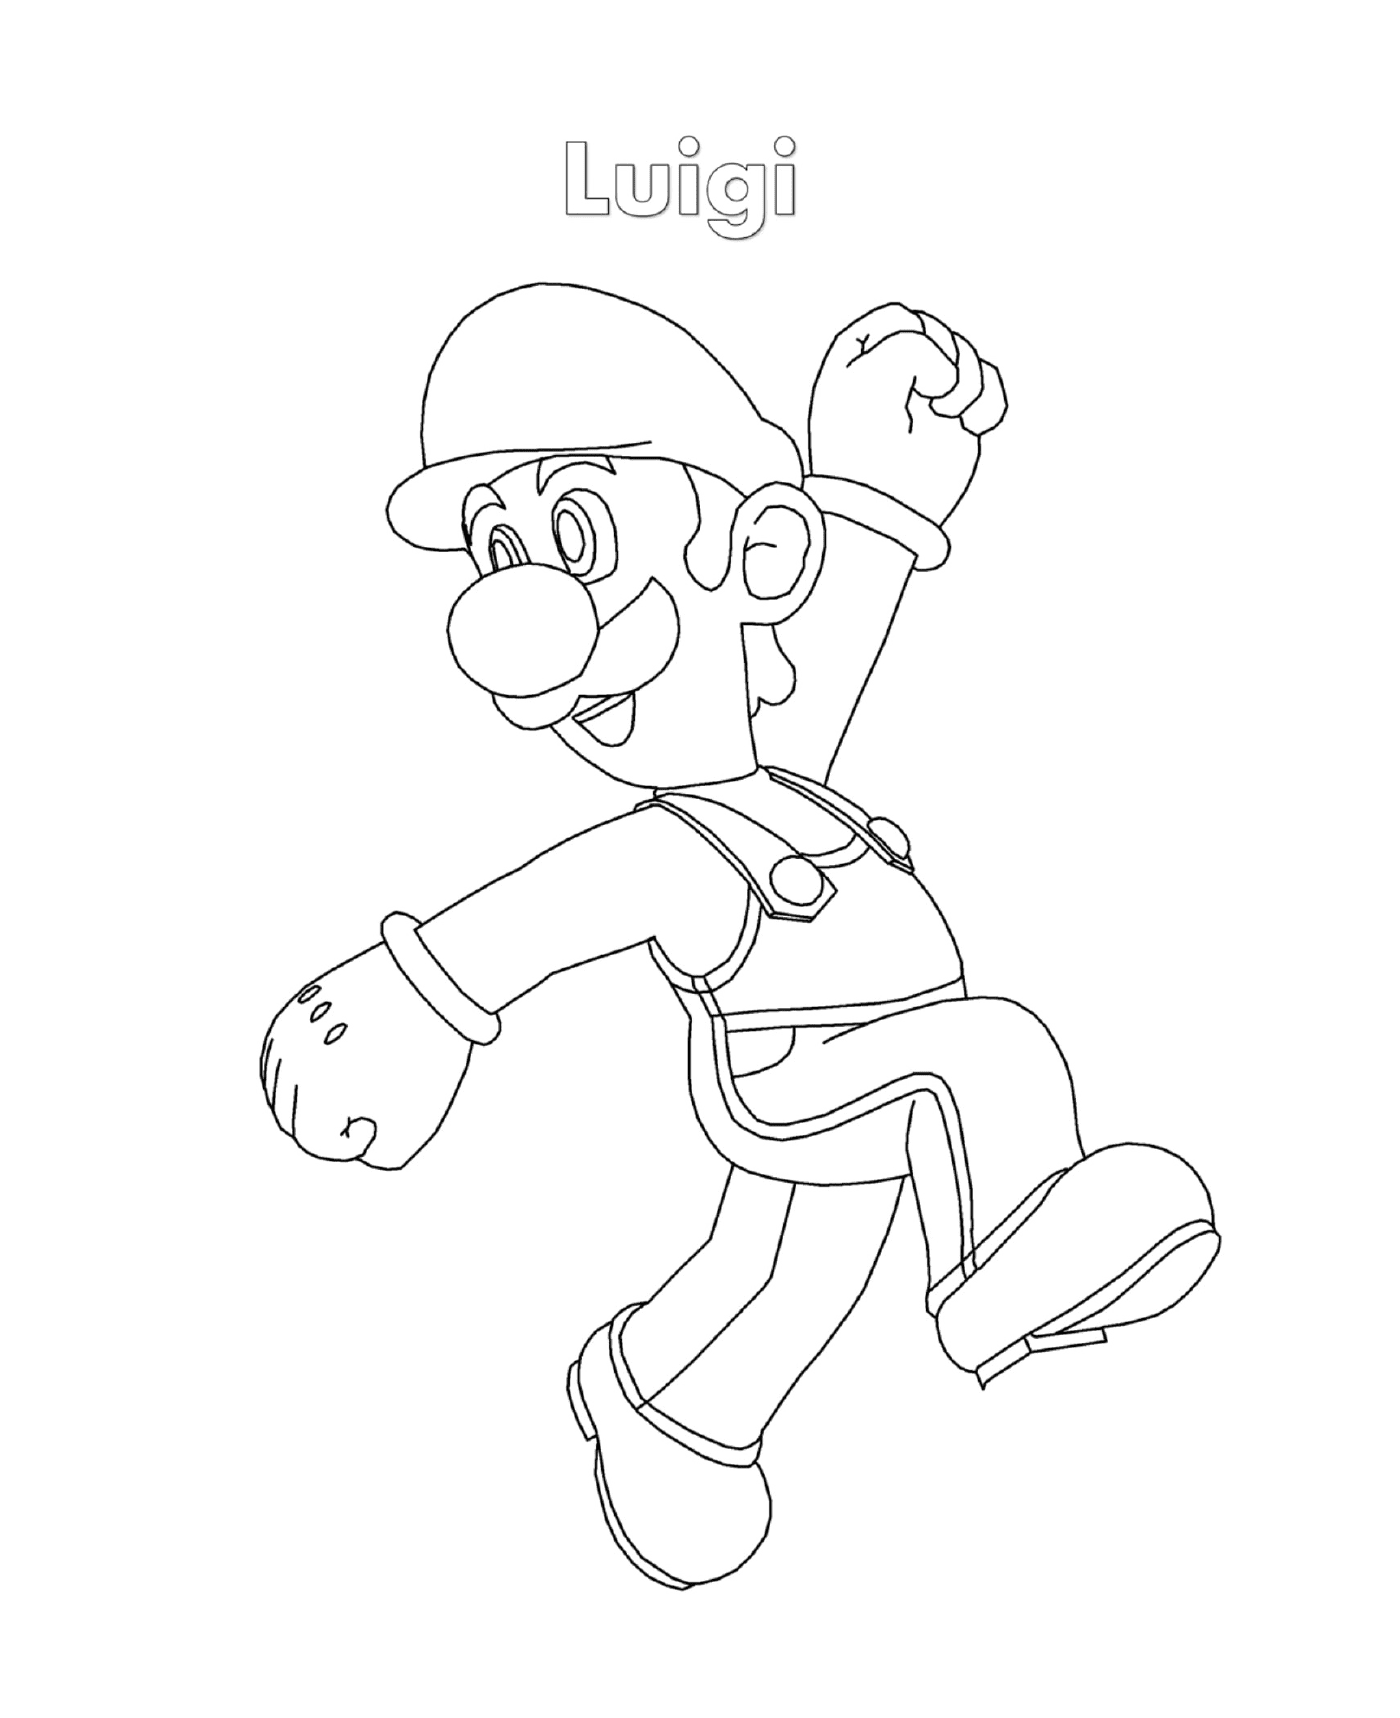   Luigi de Super Mario, un homme qui court 